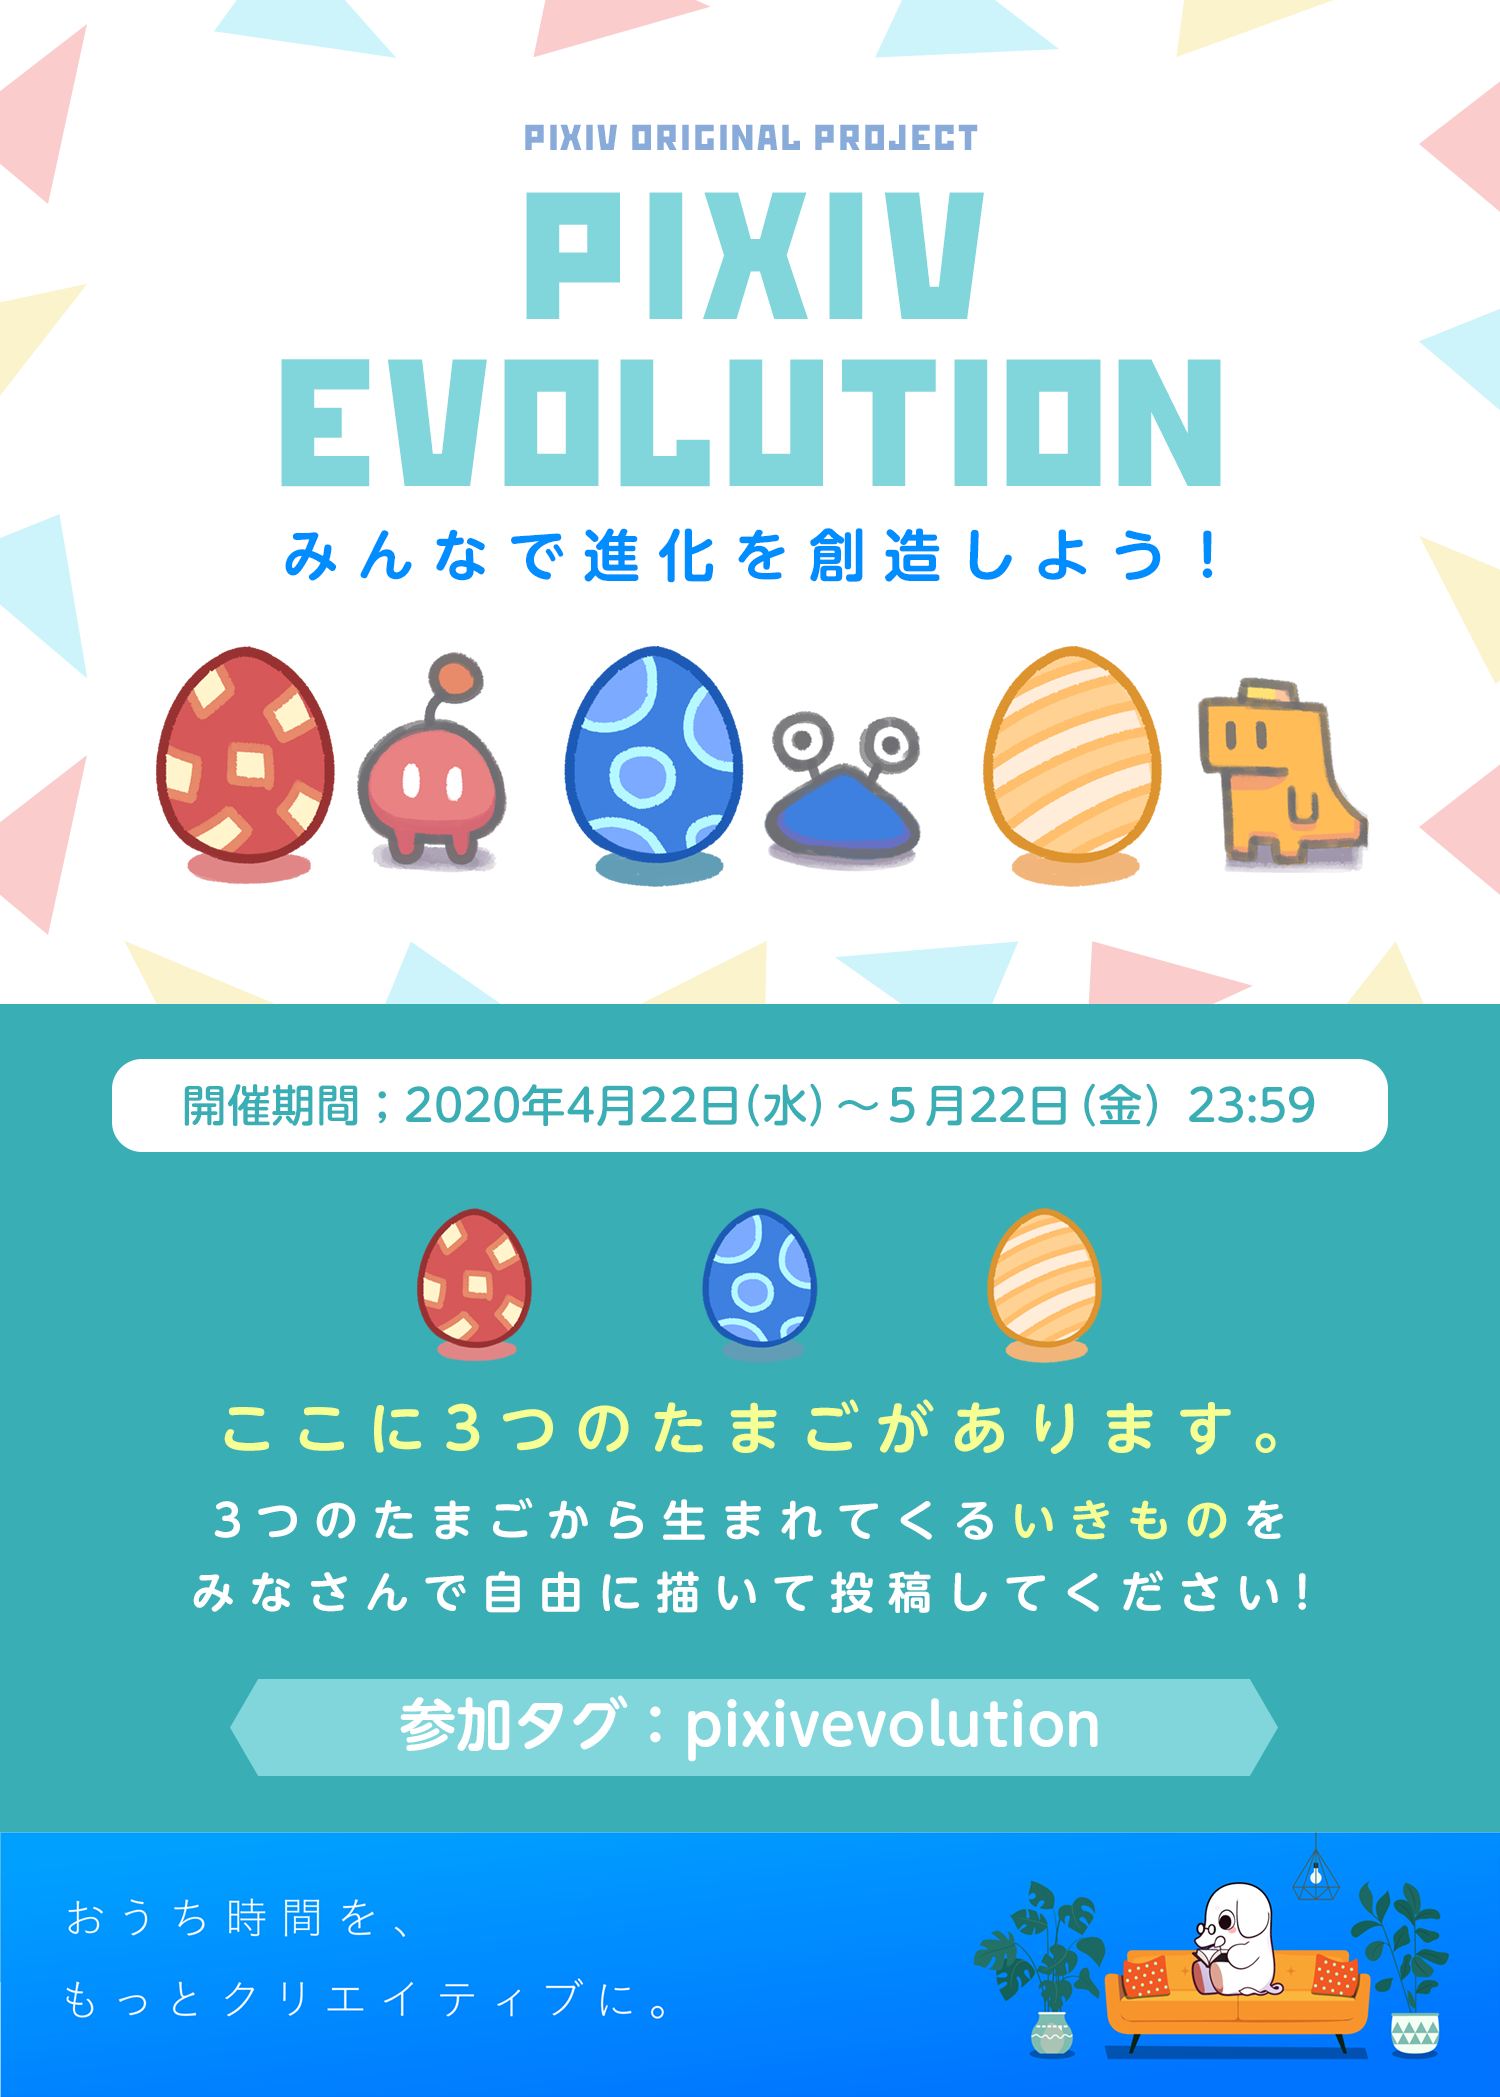 オリジナルキャラクター投稿企画「pixiv evolution」開催